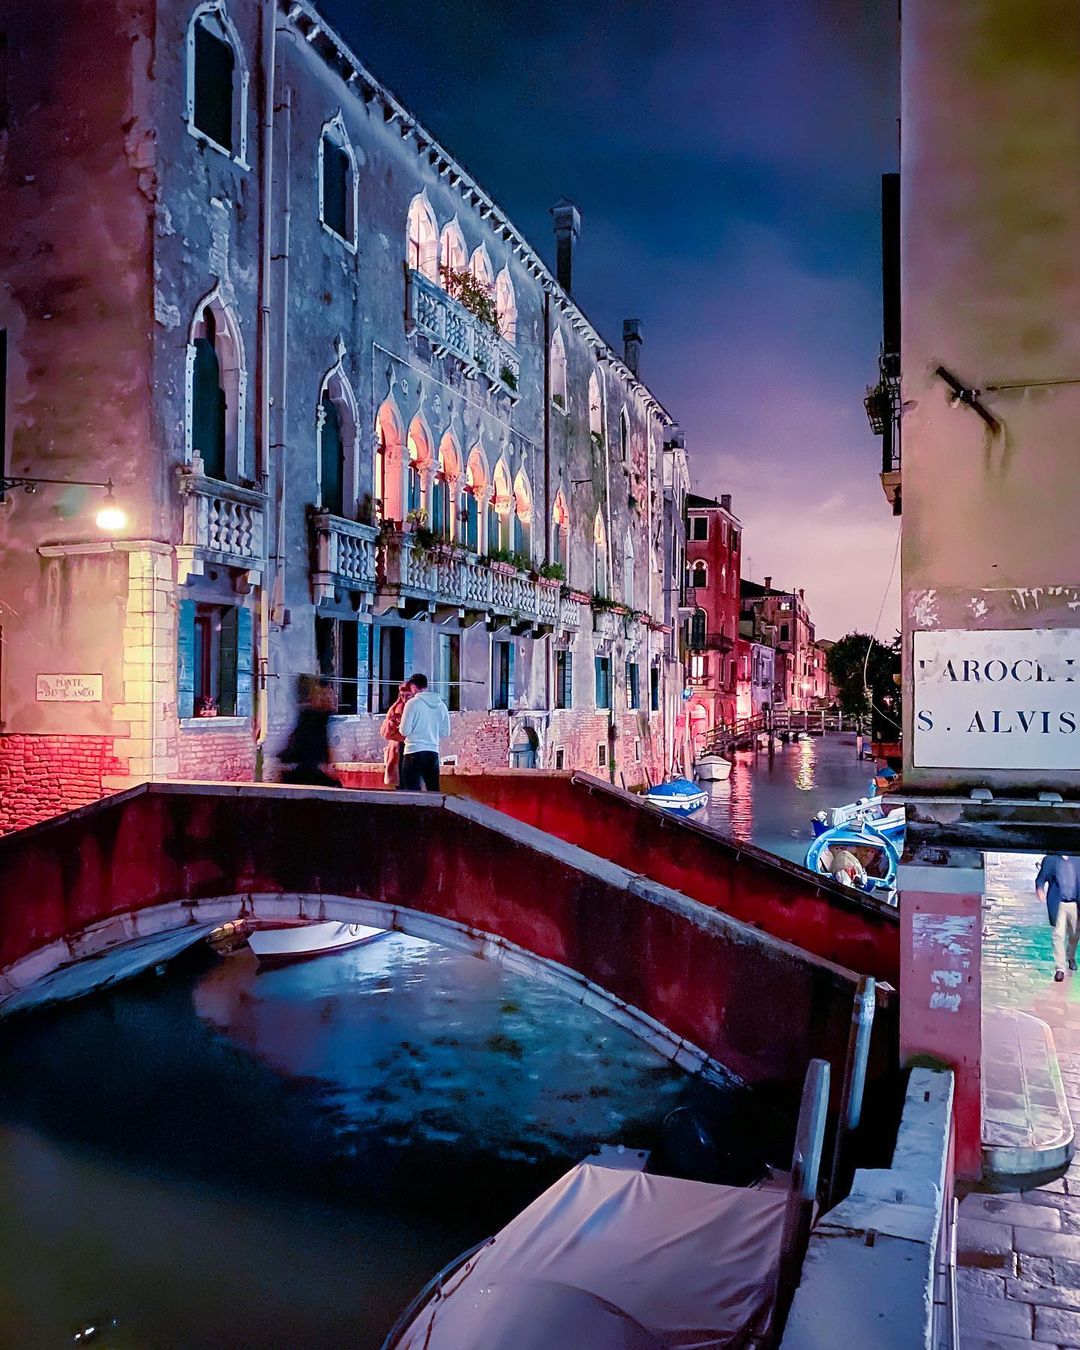 Фантастическая Венеция на фотографиях Марко Гаджио Марко, уличной, более, подписаны, Instagram, страницу, пейзажей, городских, интерьеров, зданий, много, снимает, фотографией, архитектурной, занимается, Гаджио, основном, Италия, Венеции, проживающий